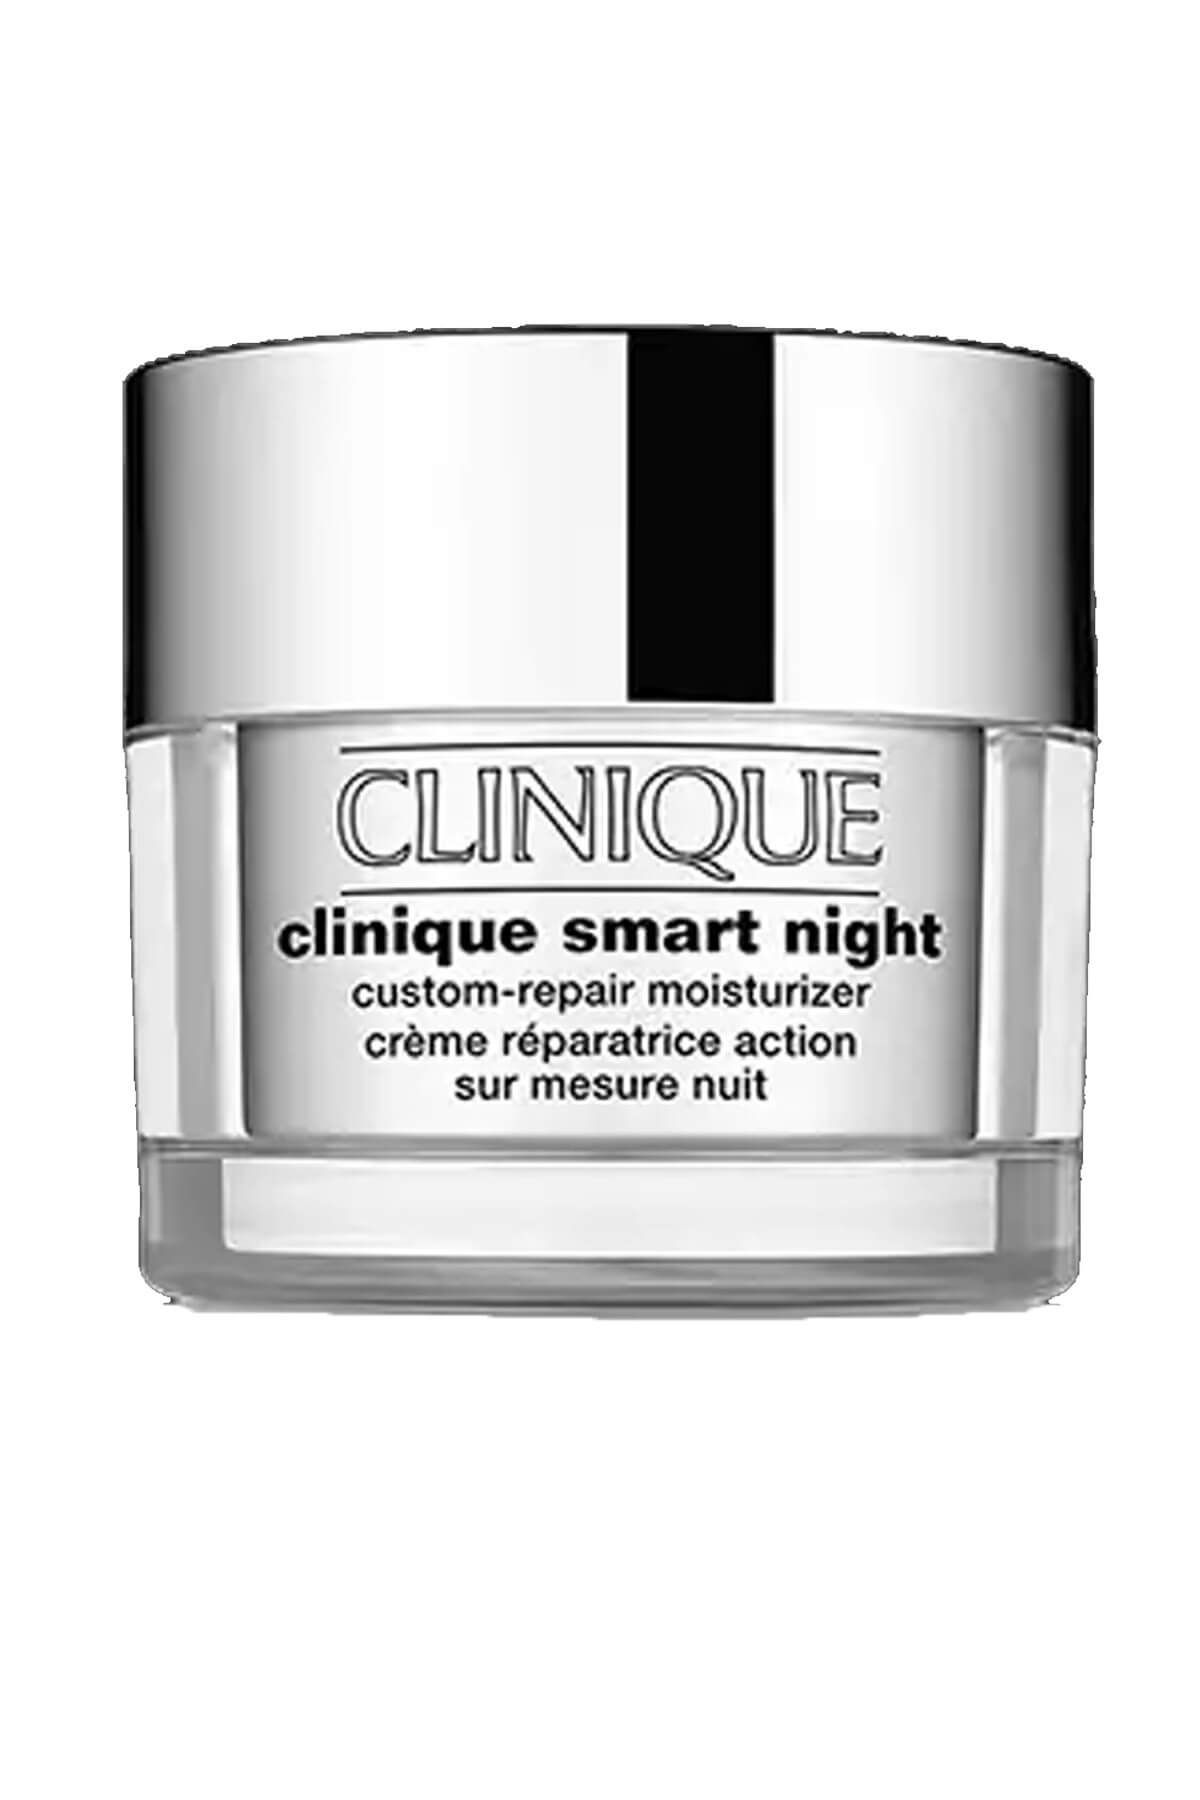 Clinique Yağlı & Çok Yağlı Ciltler için Gece Kremi - Smart Night Custom Repair 50ml 020714682422